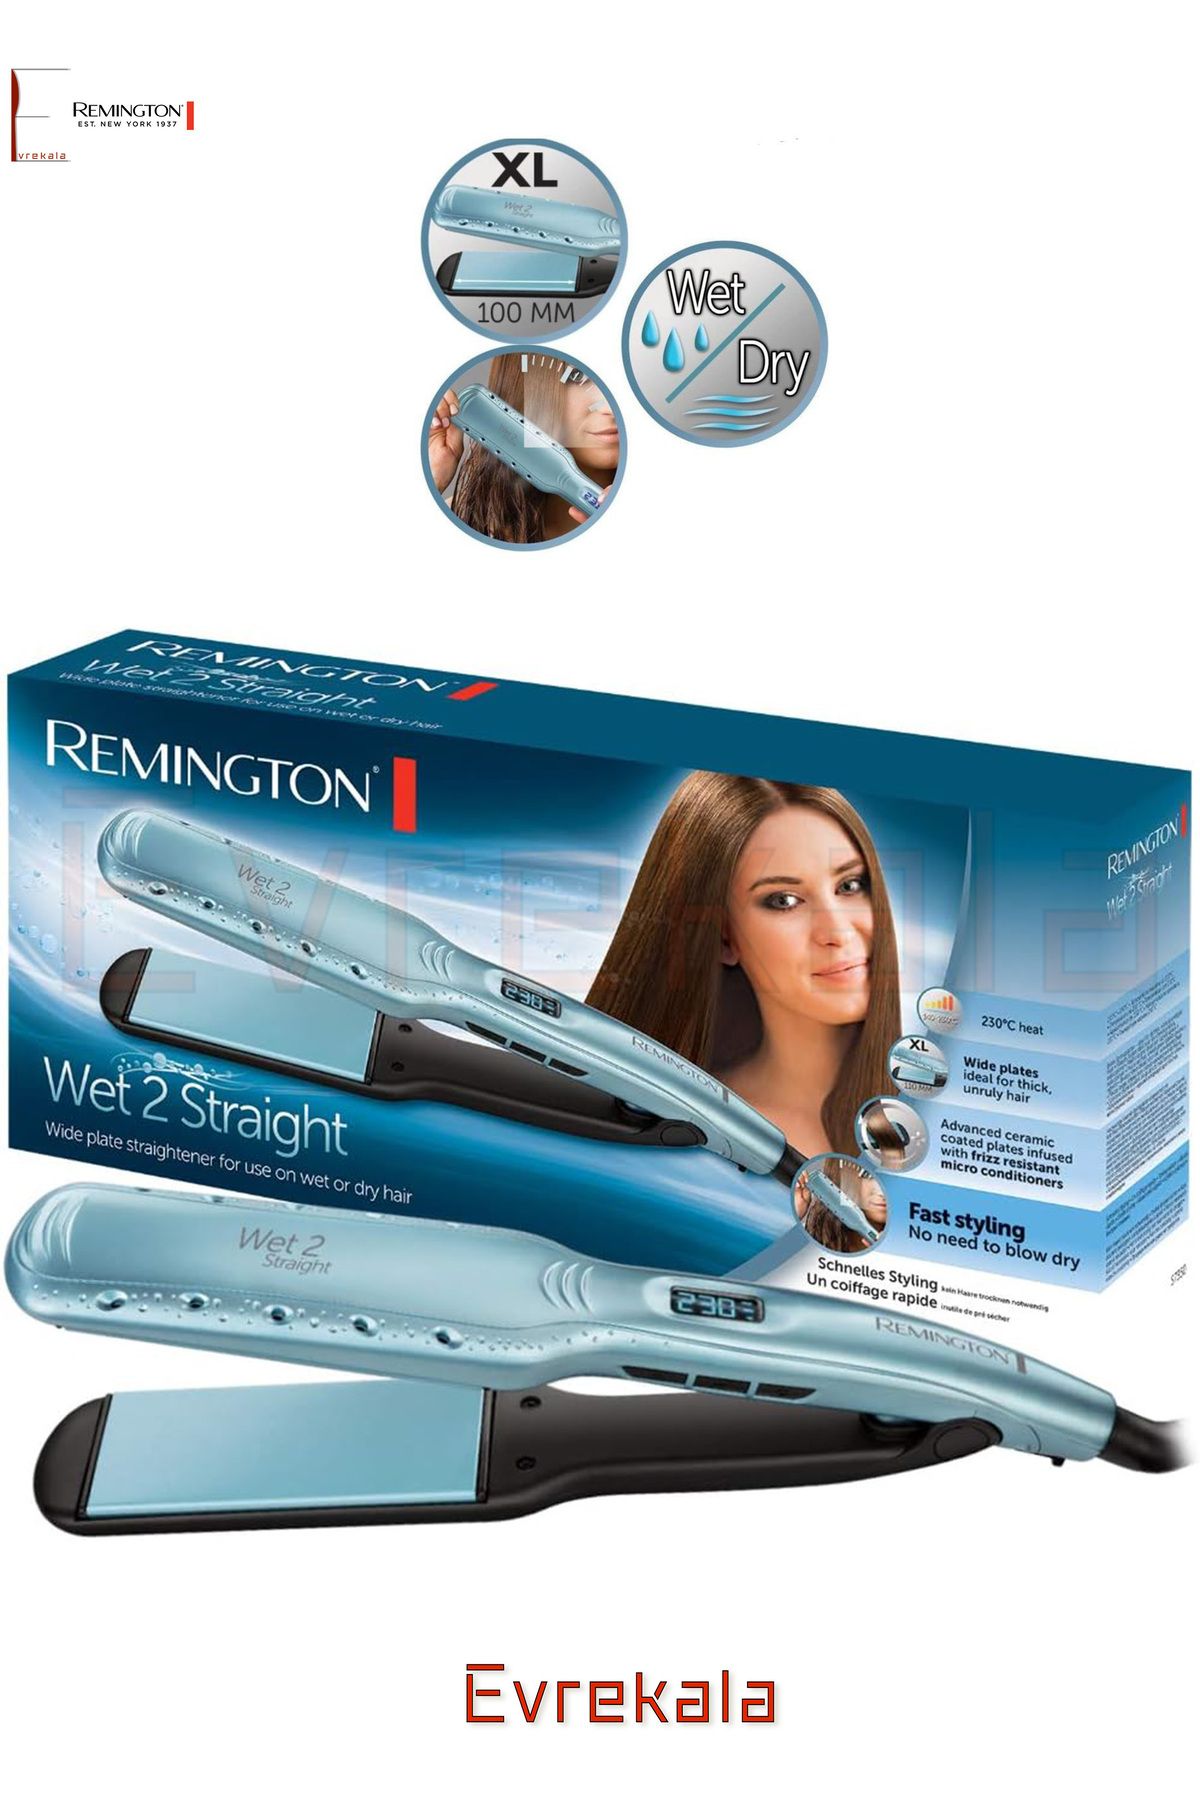 Remington Evrekala Saç Düzleştirici Islak ve Kuru Remington Wet Straight-Yetkili Satıcı Evrekala-New Model Pro